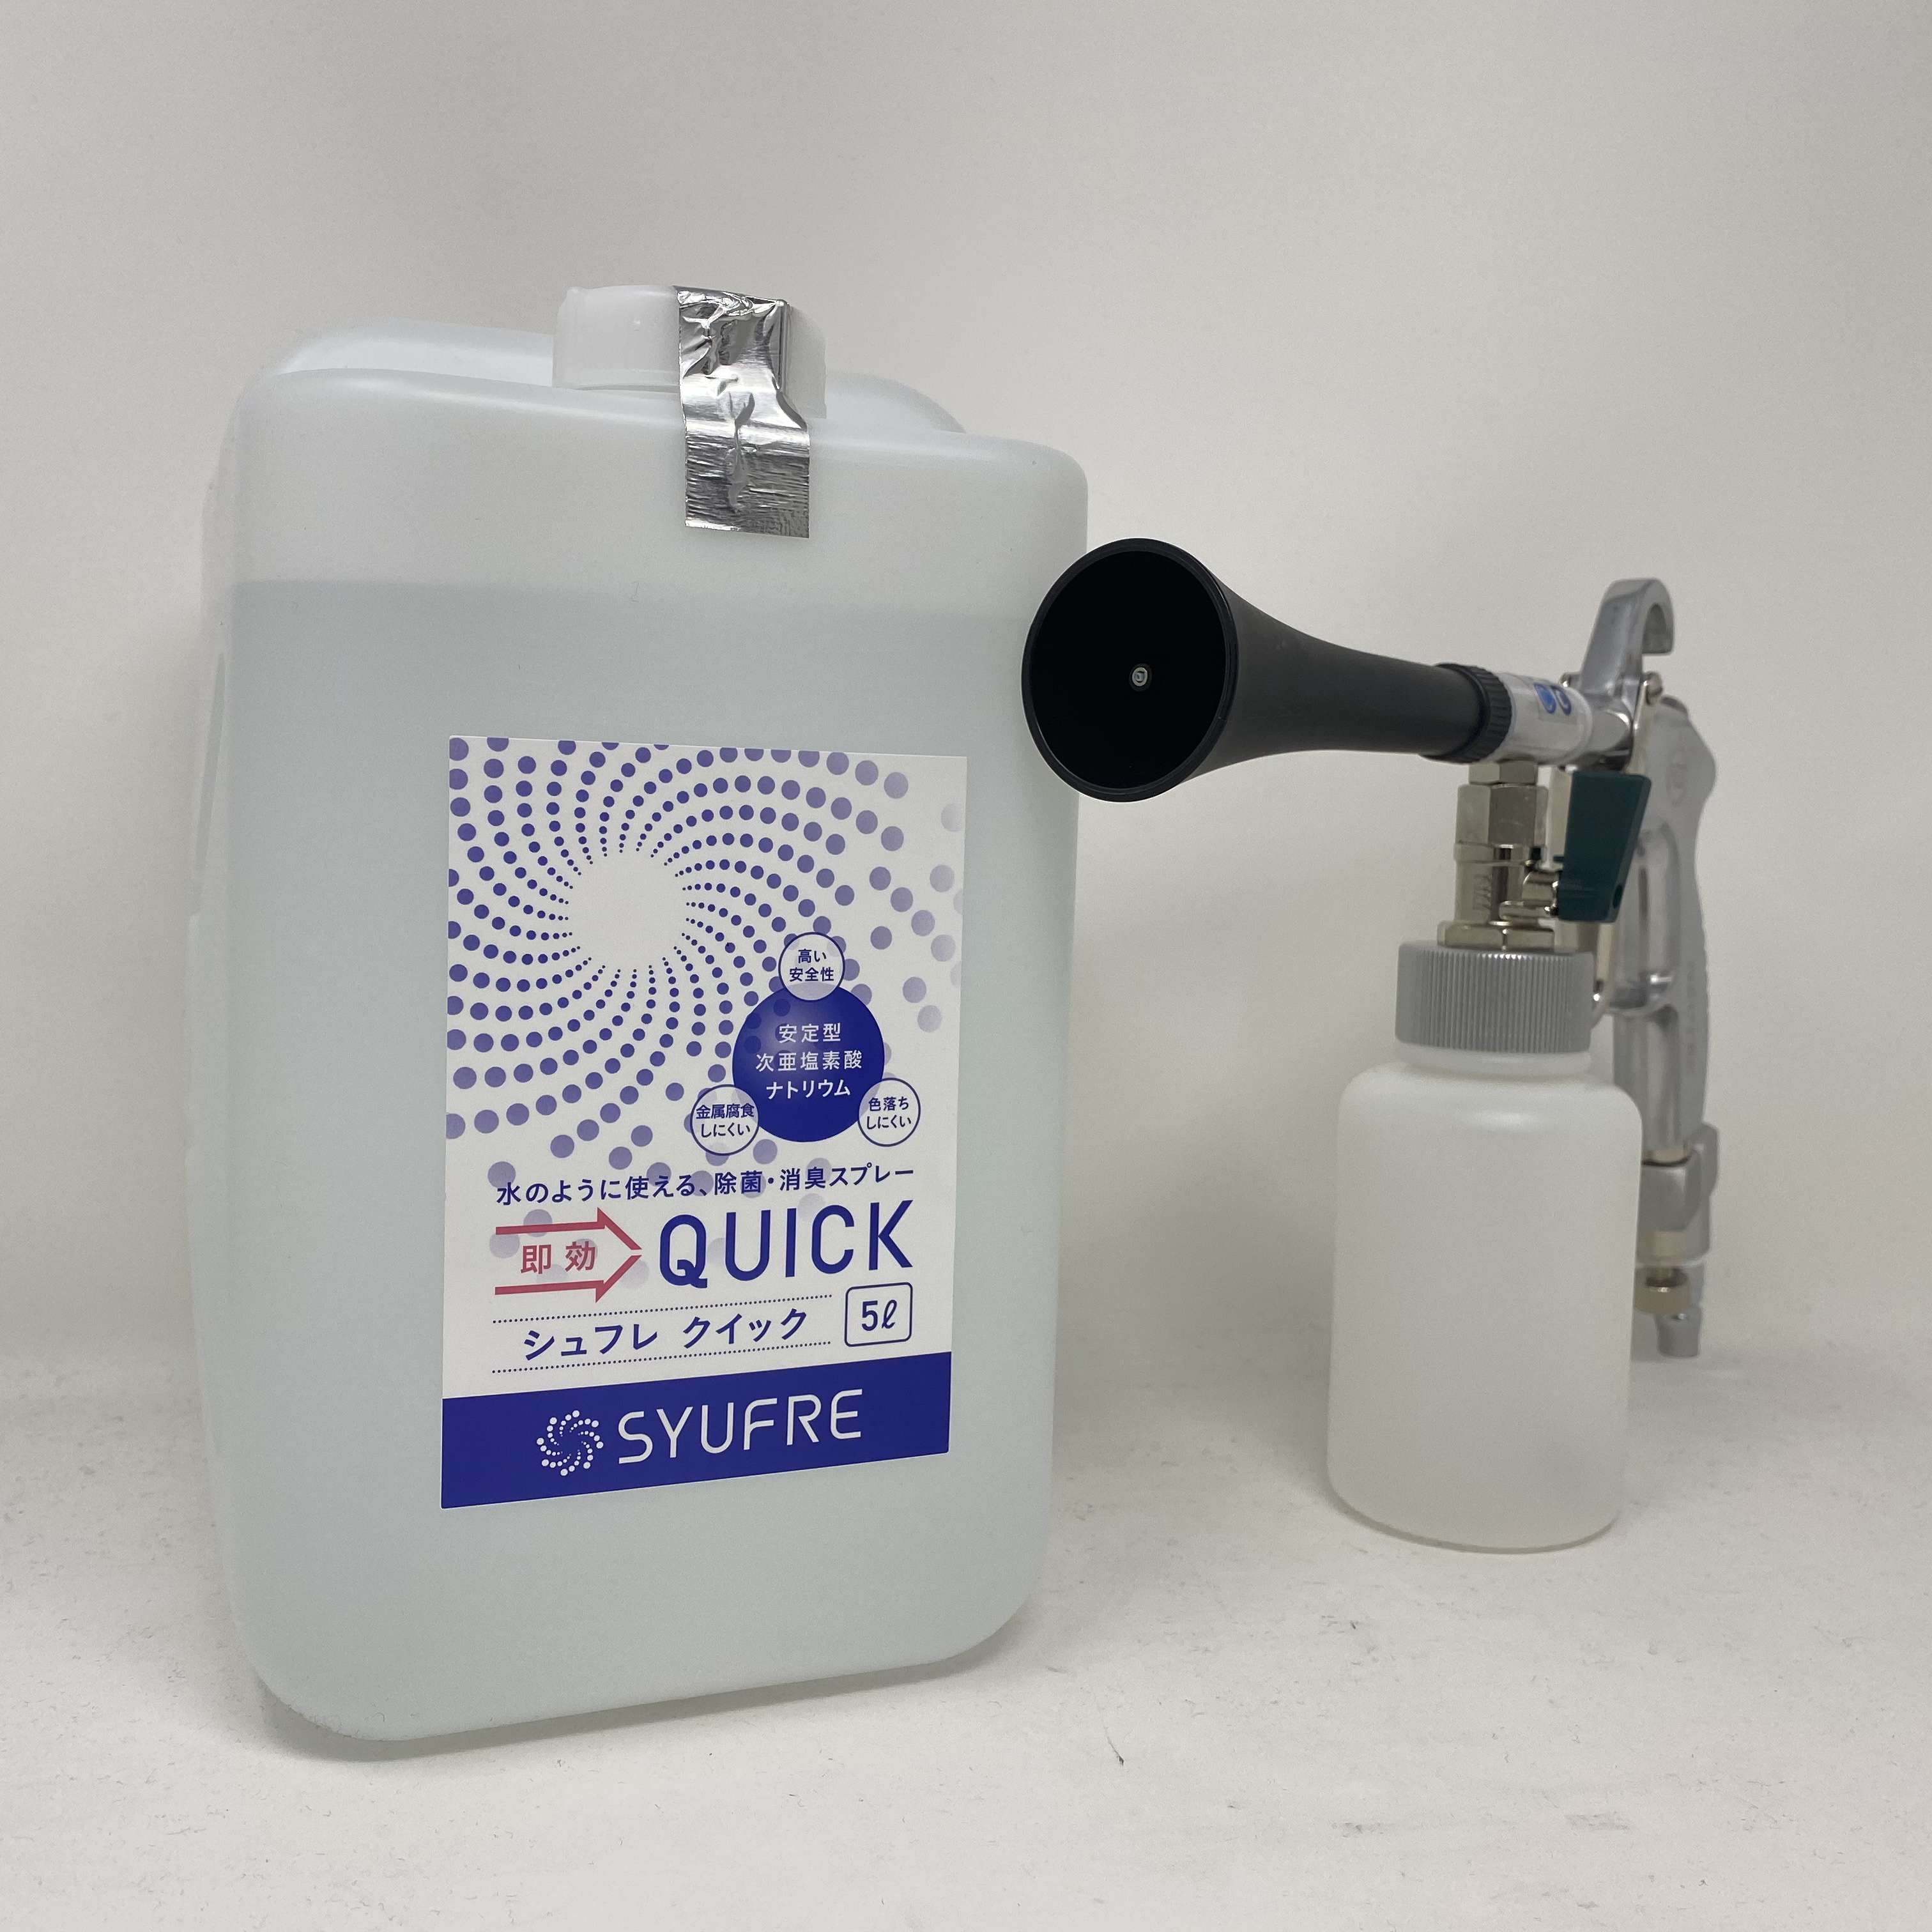 カーデ マーケットプレイス 空間除菌剤 Syufre Quick5l ドライミストガンセット